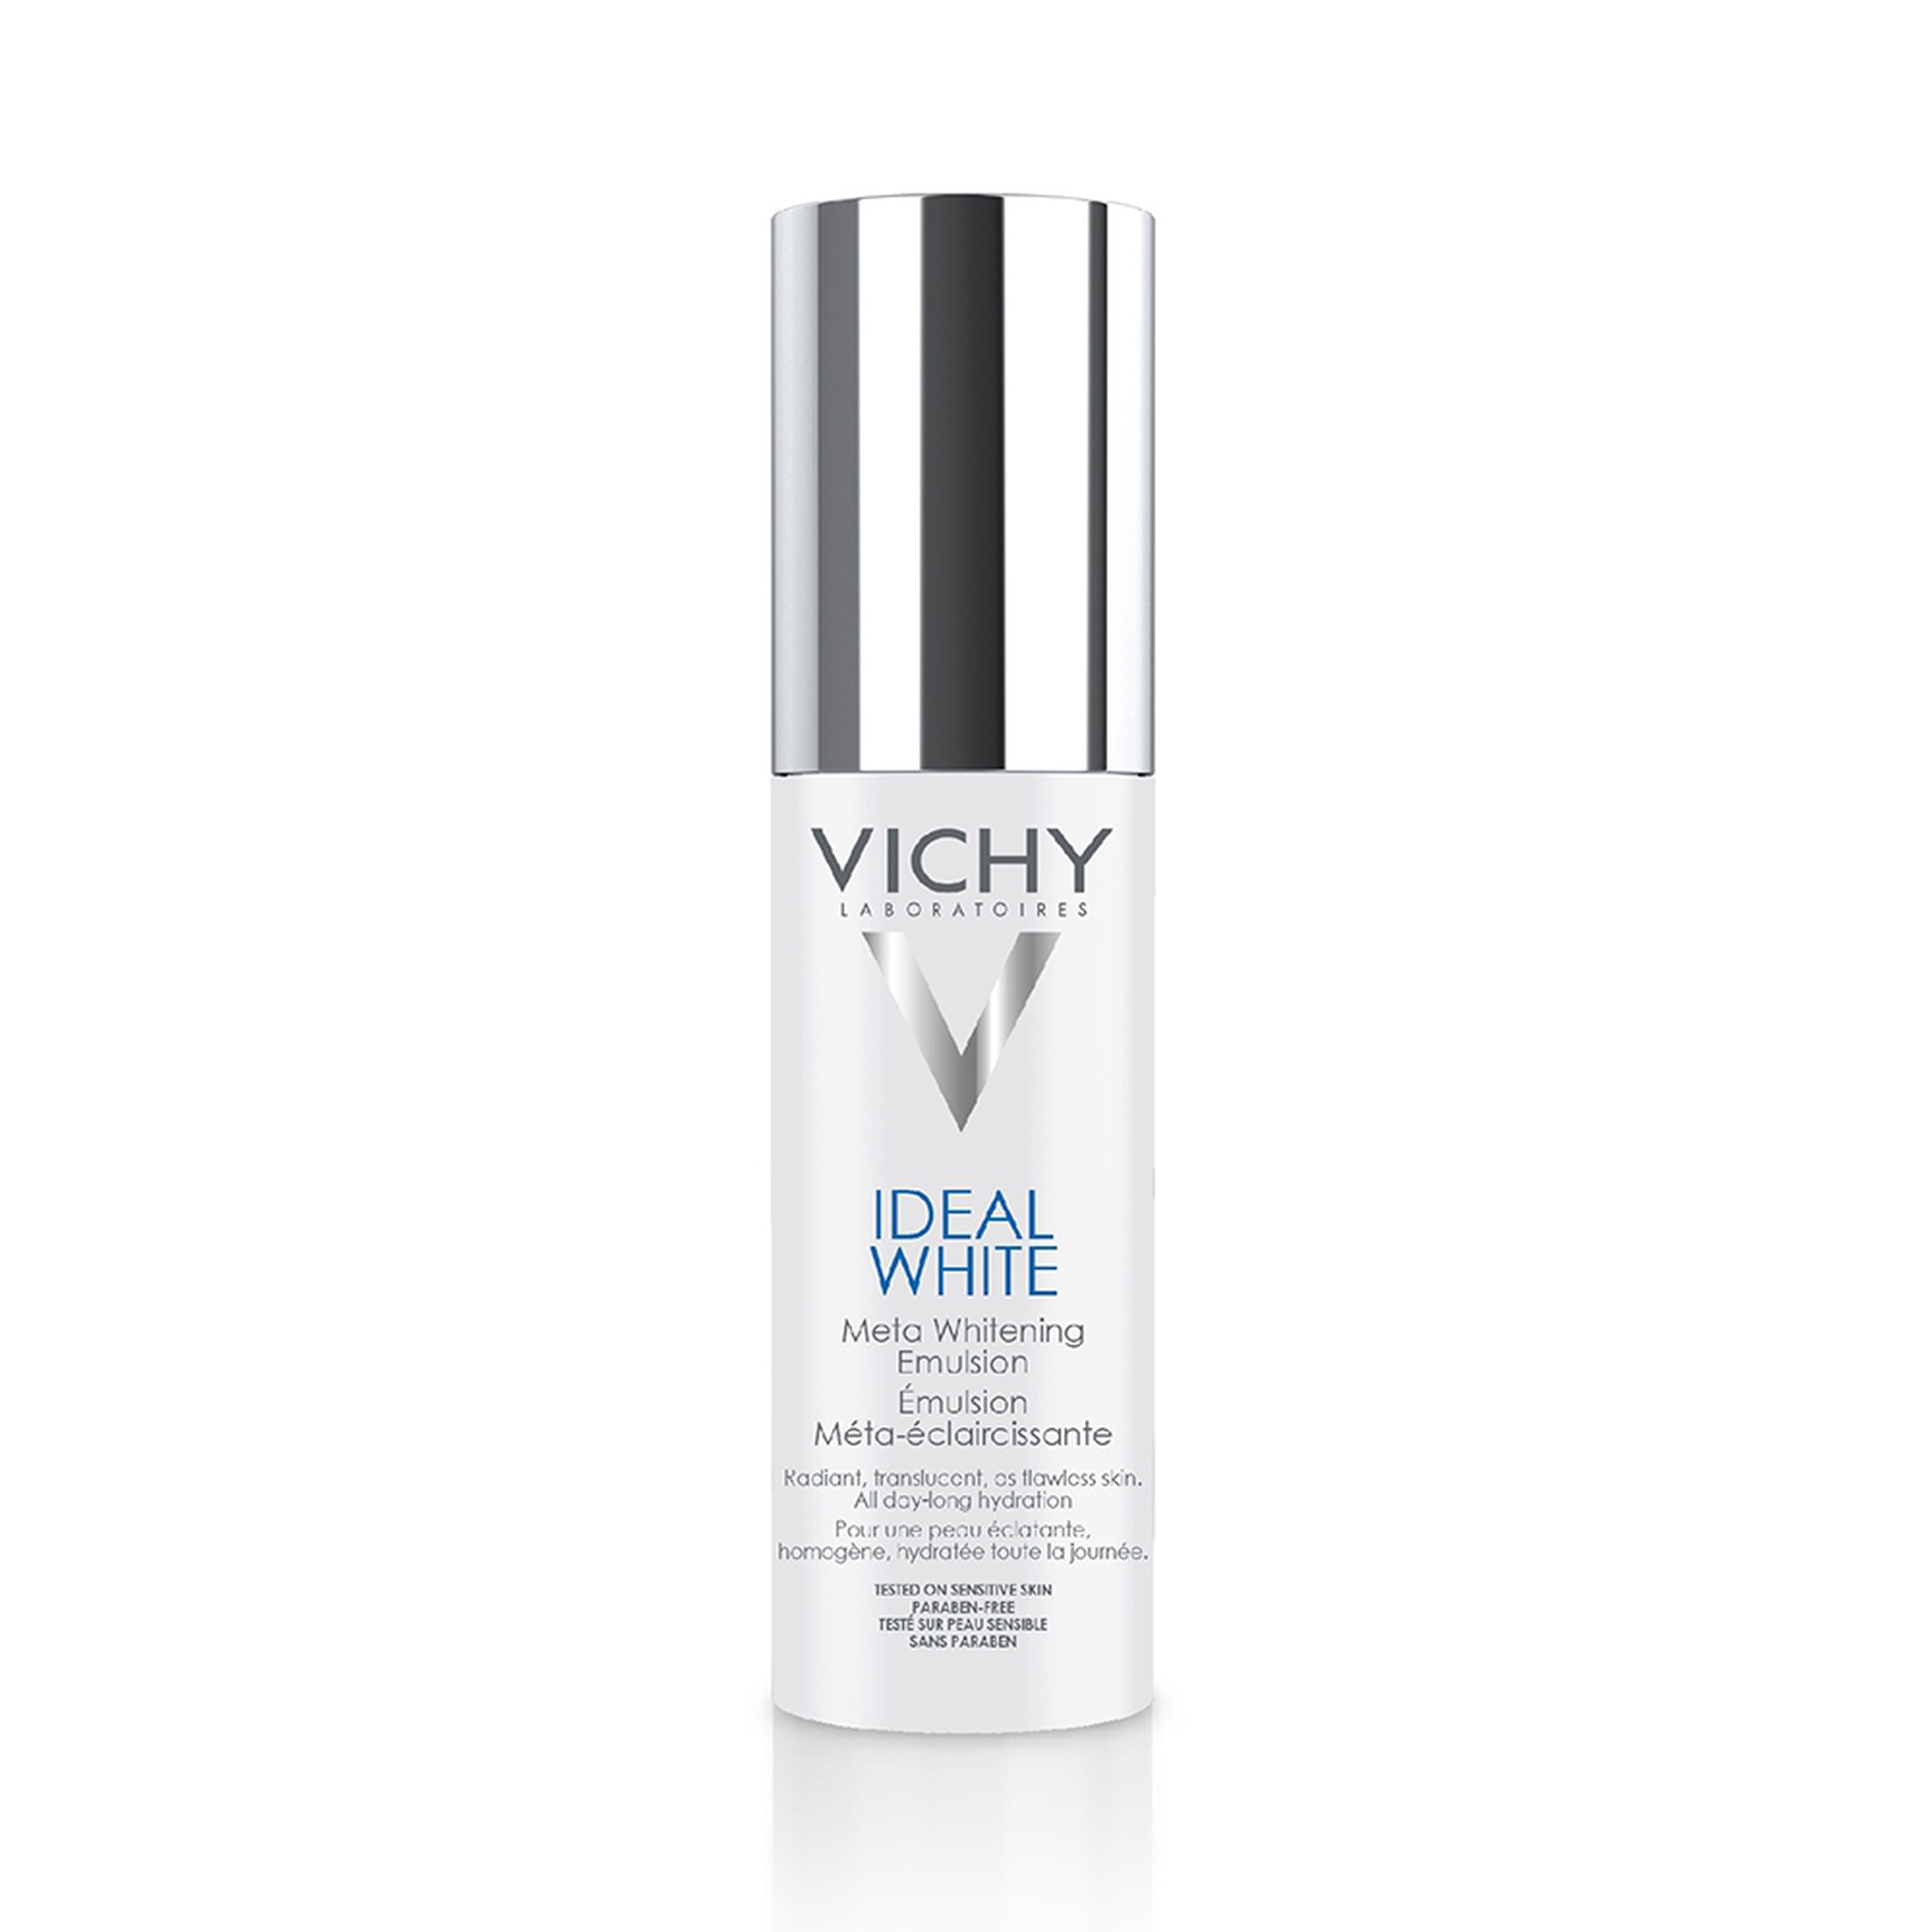 Sữa dưỡng dạng nhũ tương Vichy Ideal White Meta Whitening Emulsion làm đều màu da, giảm thâm nám sau 8 tuần (50ml)